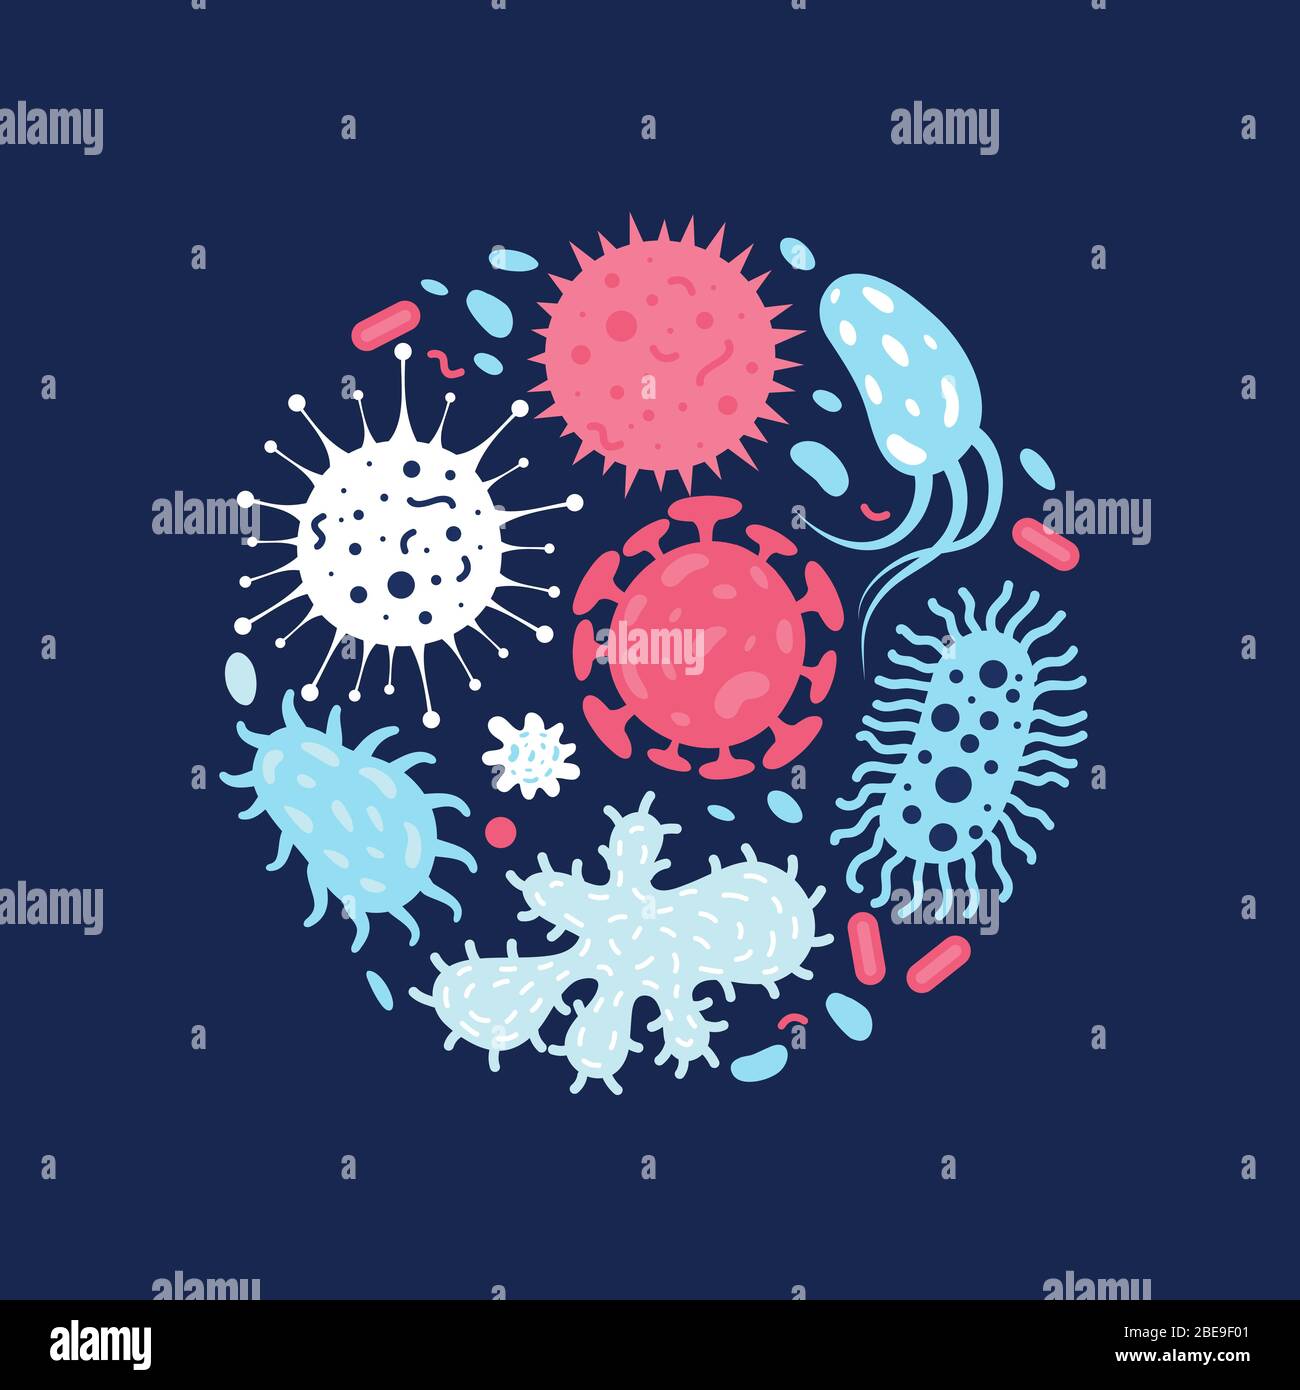 Vektor-Illustration von Doodle Mikroben. Zeichnung Bakterien Virus und Bakterien-Infektion Stock Vektor